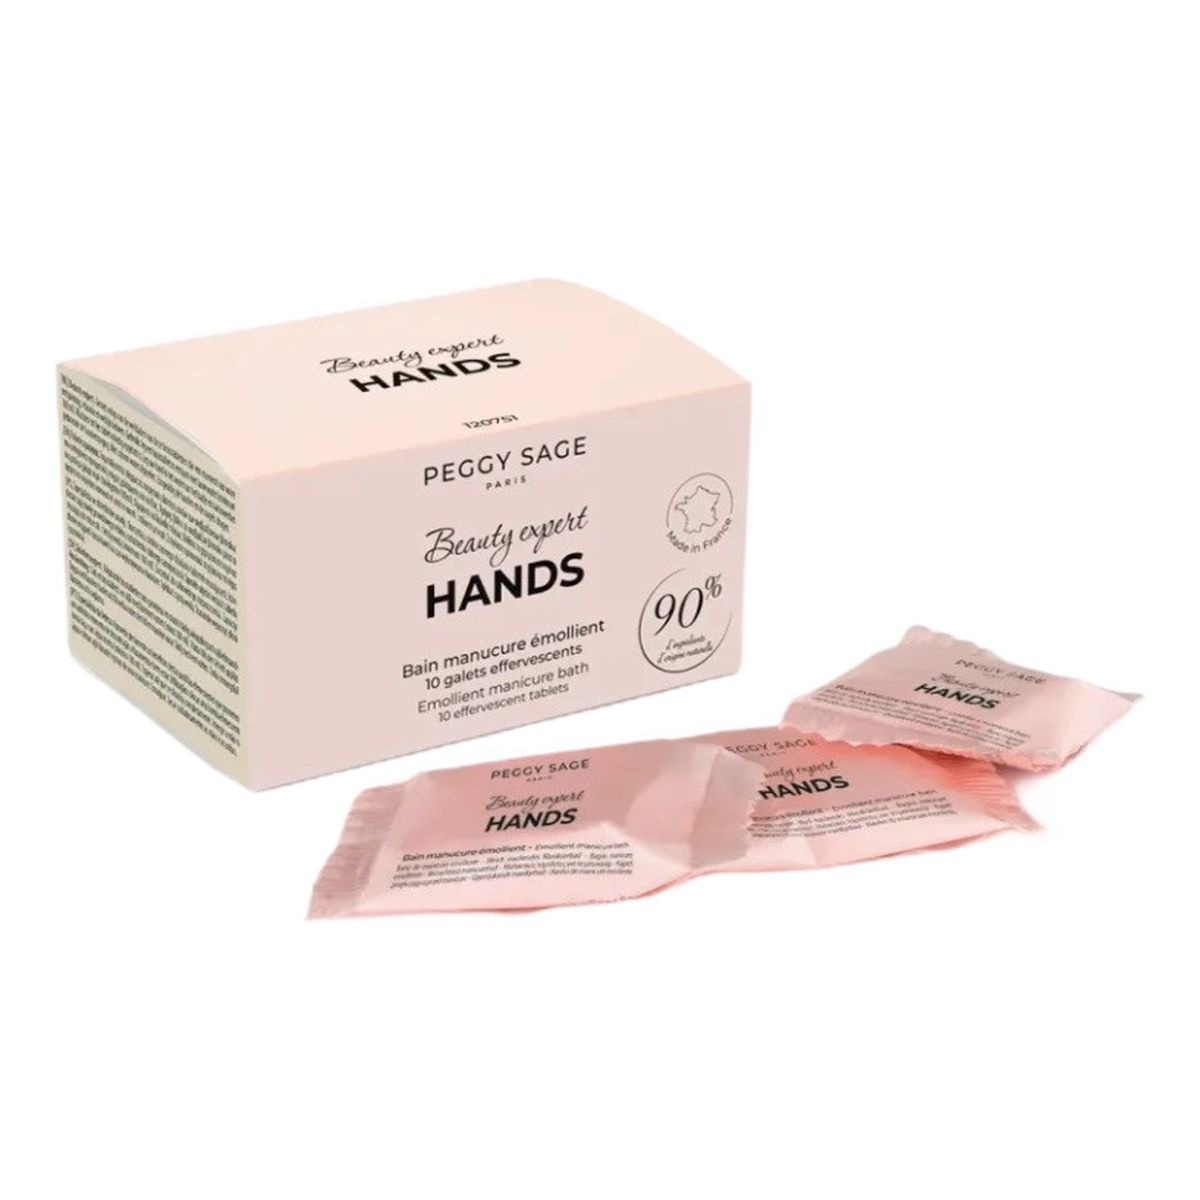 Peggy Sage Beauty expert hands zmiękczające tabletki do kąpieli przed manicure 10szt.